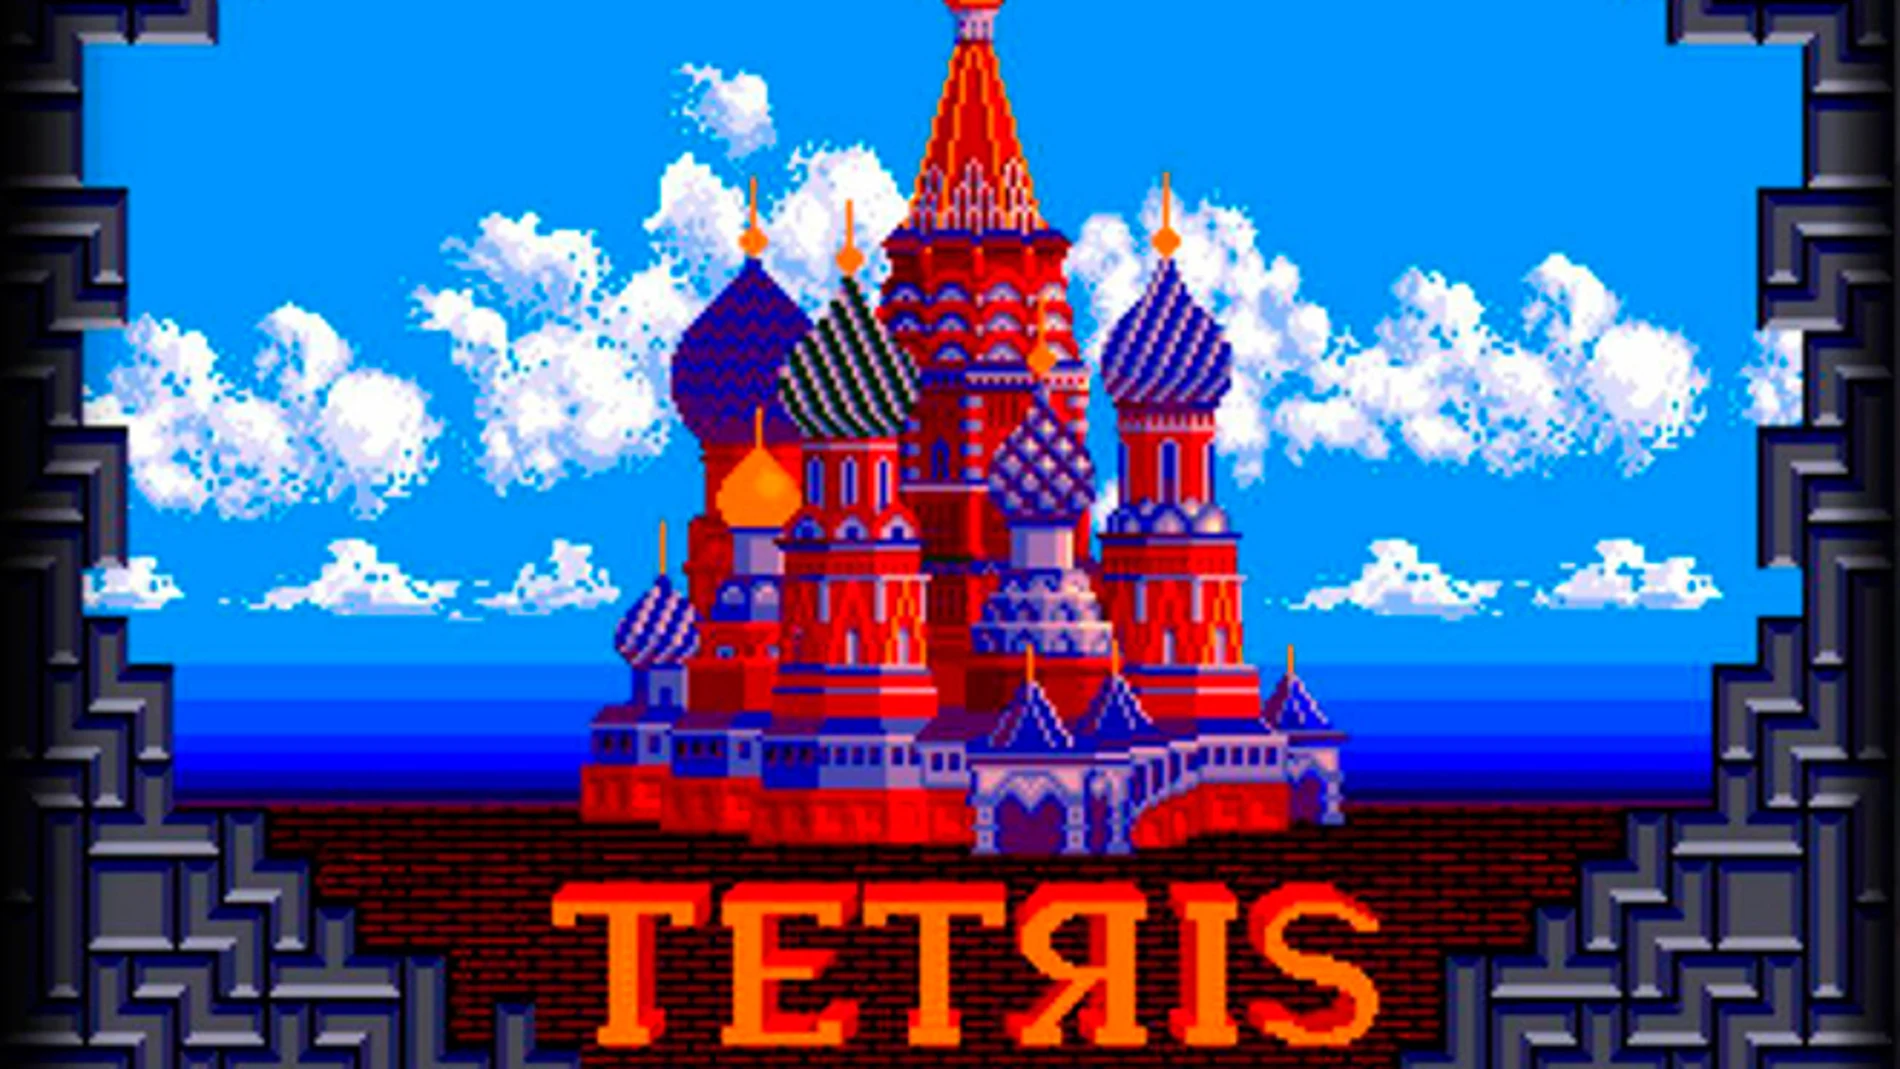 Campaña Corresponsal Minimizar Esta es la increíble historia de Tetris, el videojuego que cambió el mundo  en plena guerra fría